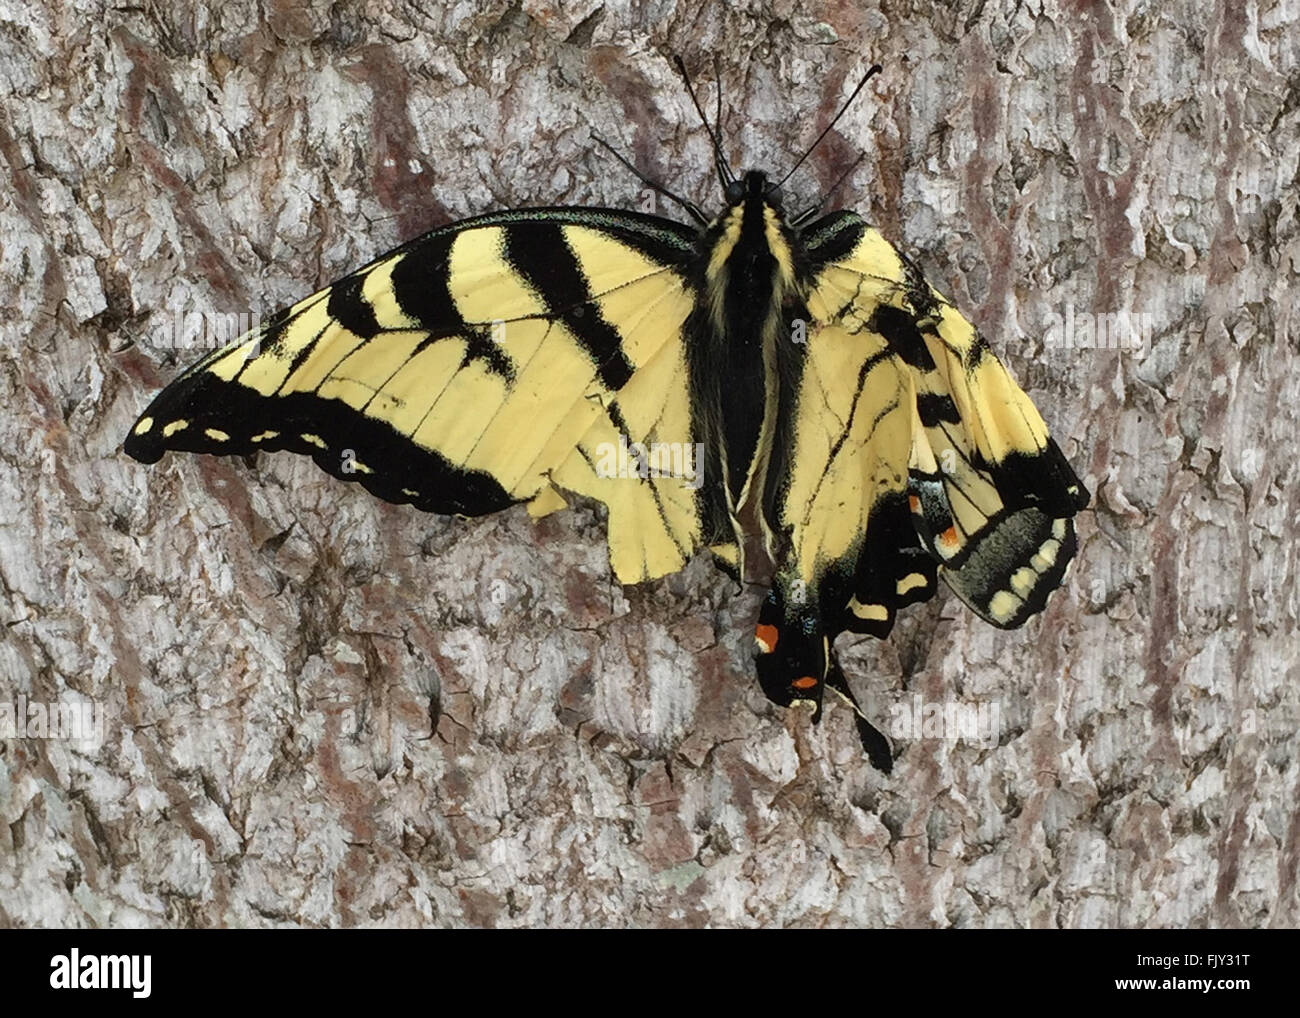 Lesionado especie oriental mariposa con aleta dañada Foto de stock